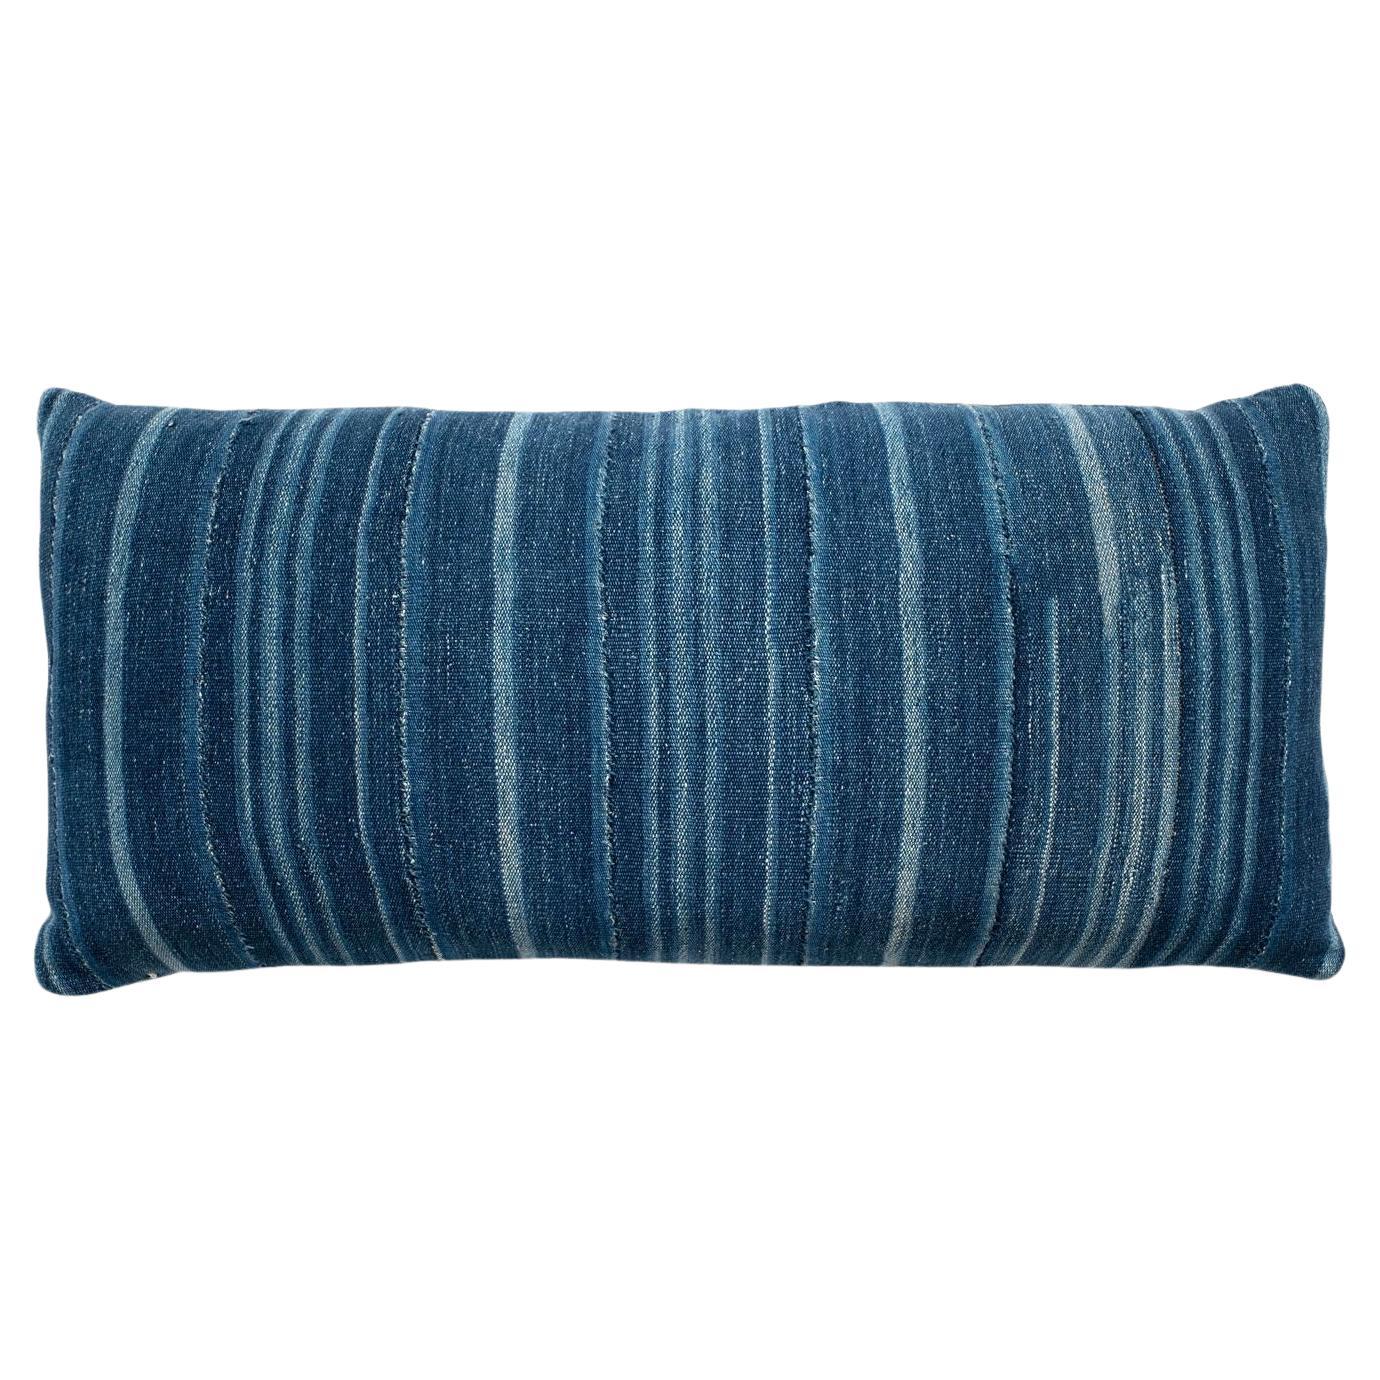 Large Faded Indigo Tone-on-Tone Striped Lumbar Cushion For Sale